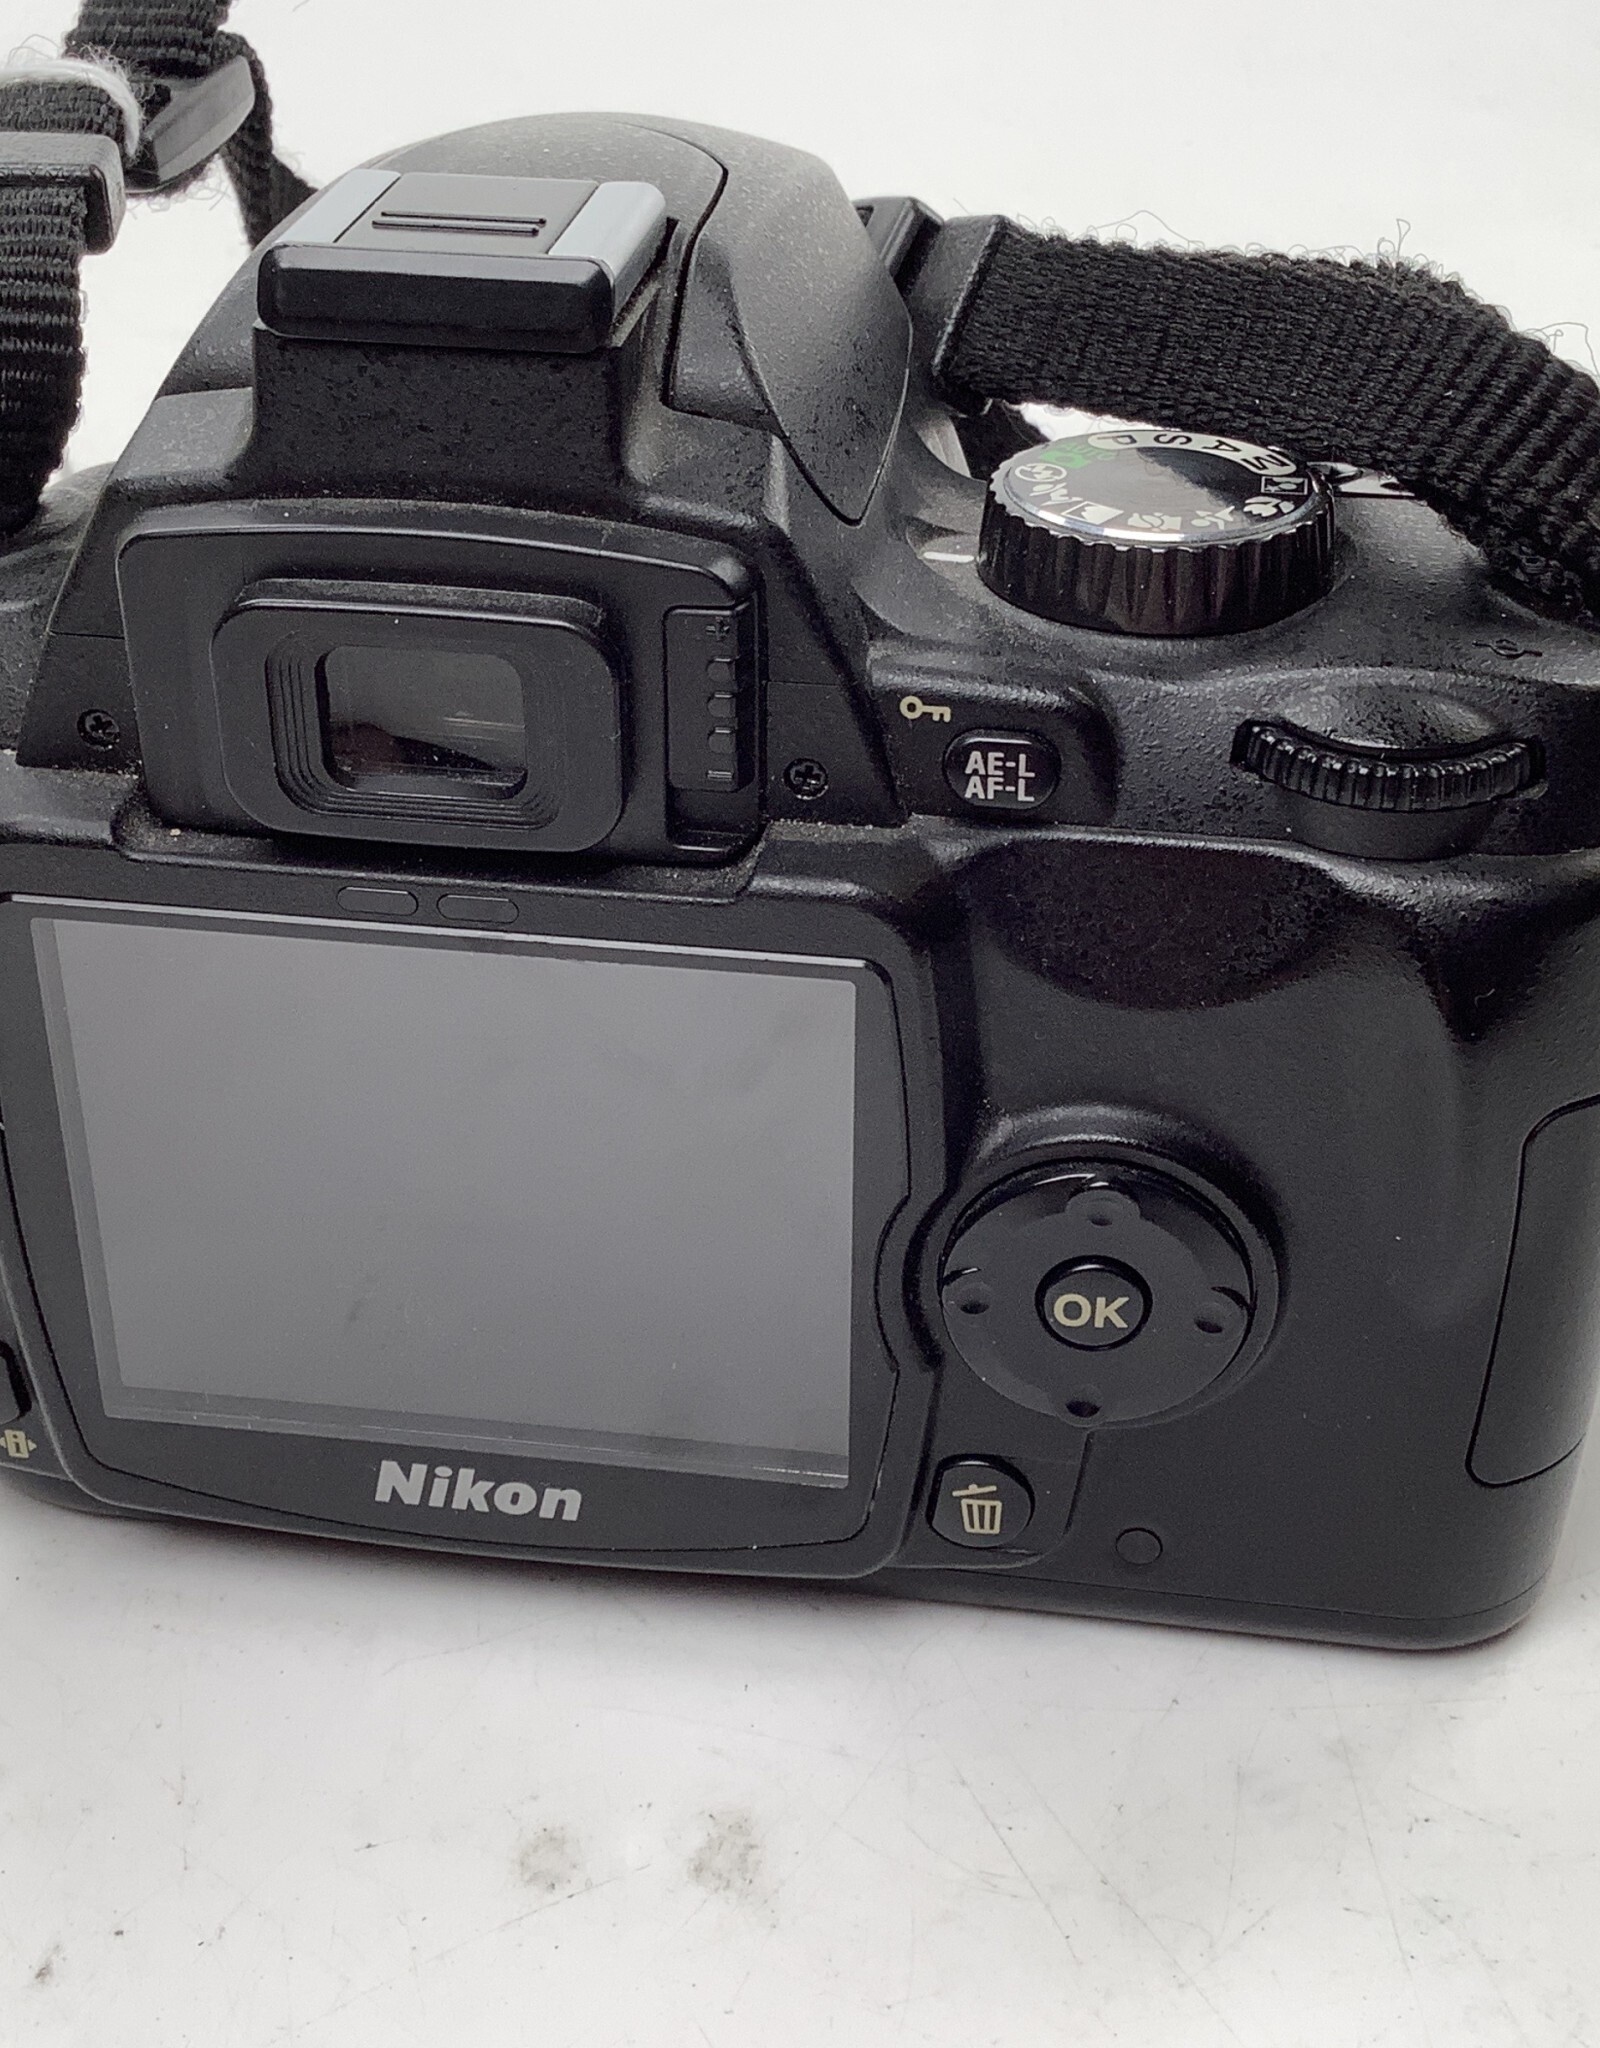 NIKON Nikon D60 Camera Body No Charger Used Good